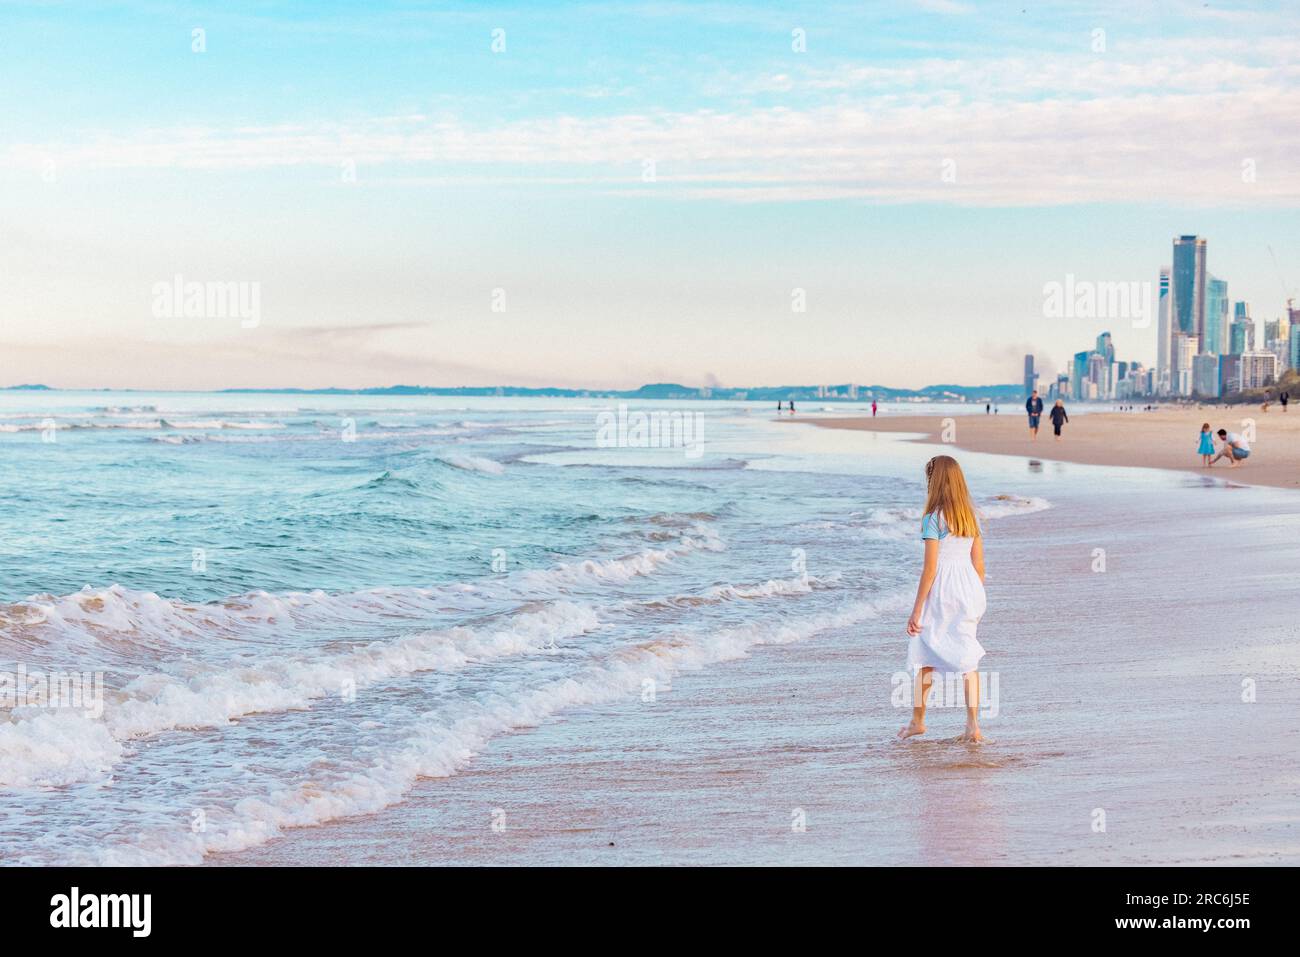 Fille jouant sur la plage éclaboussant dans les vagues en vacances avec la ville Gold Coast Skyline visible en arrière-plan Banque D'Images